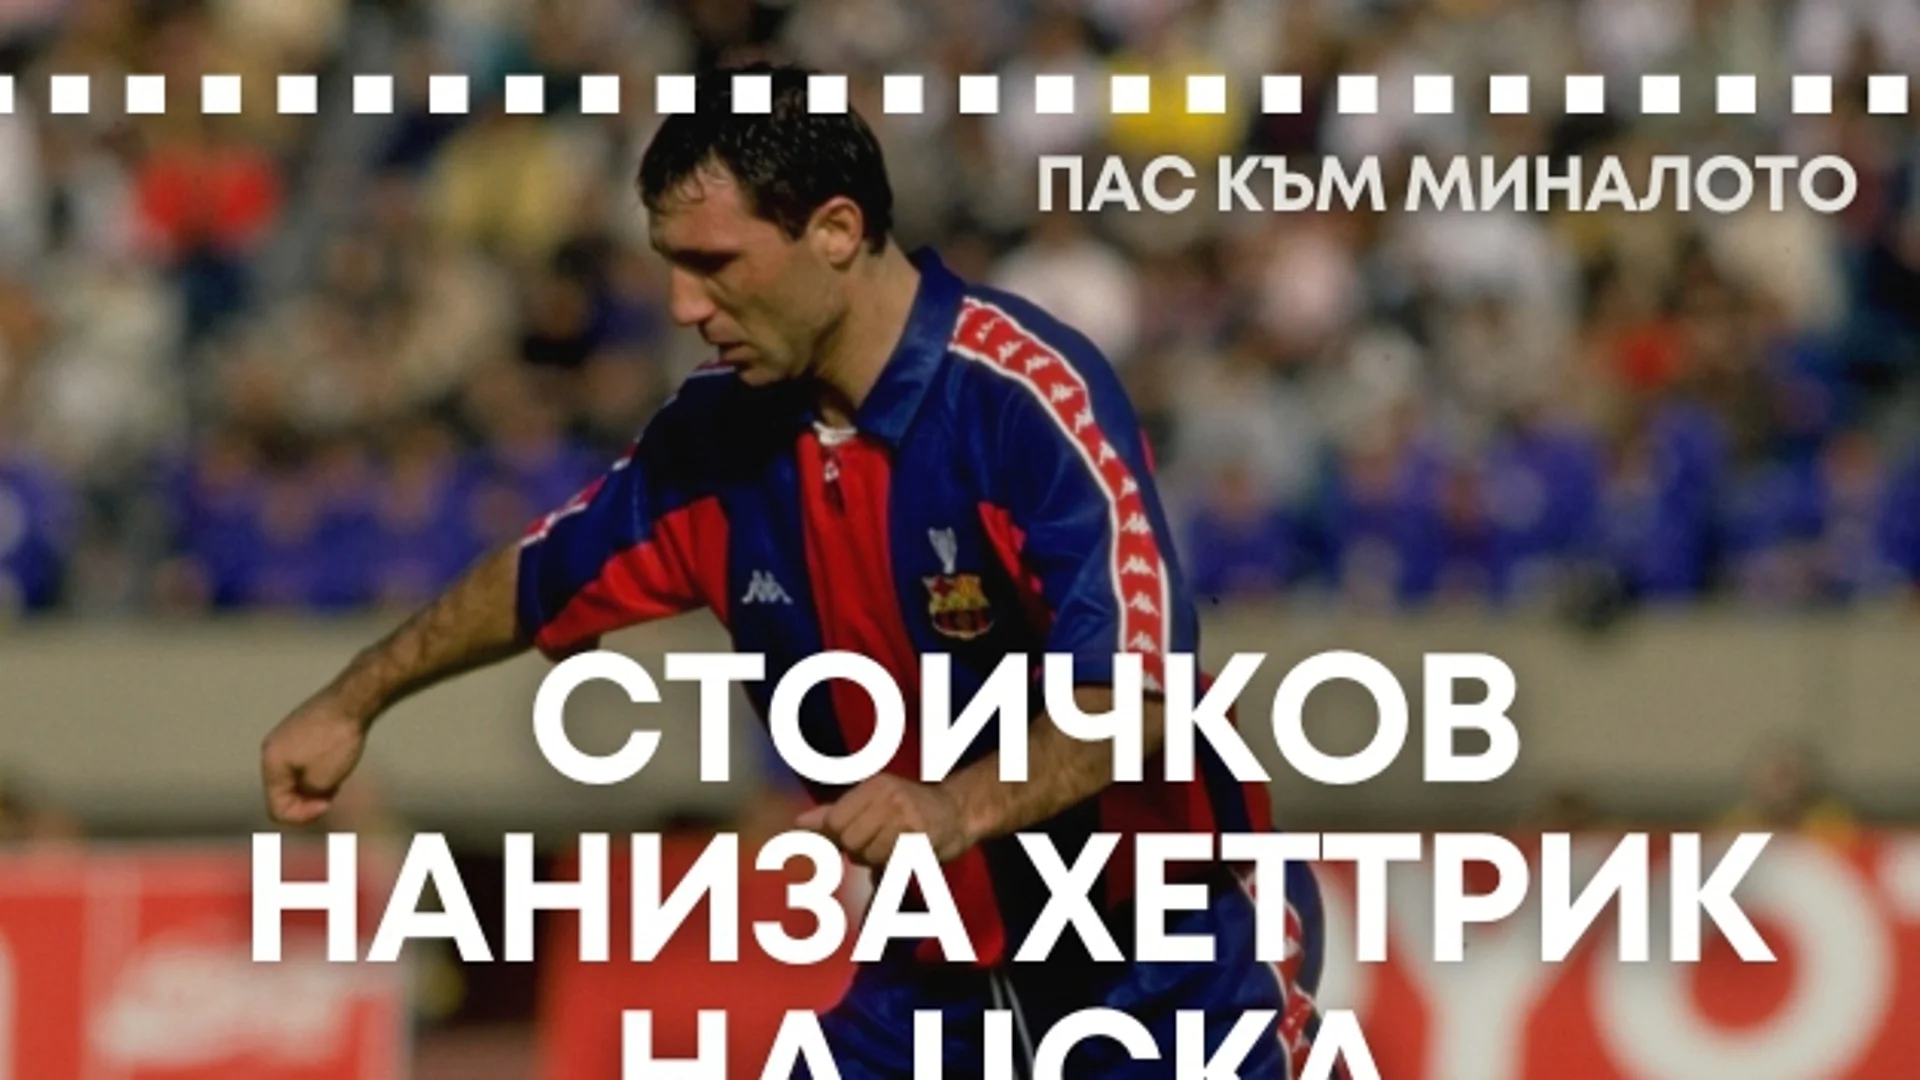 "Пас към миналото": Как Стоичков наниза хеттрик във вратата на ЦСКА (ВИДЕО)